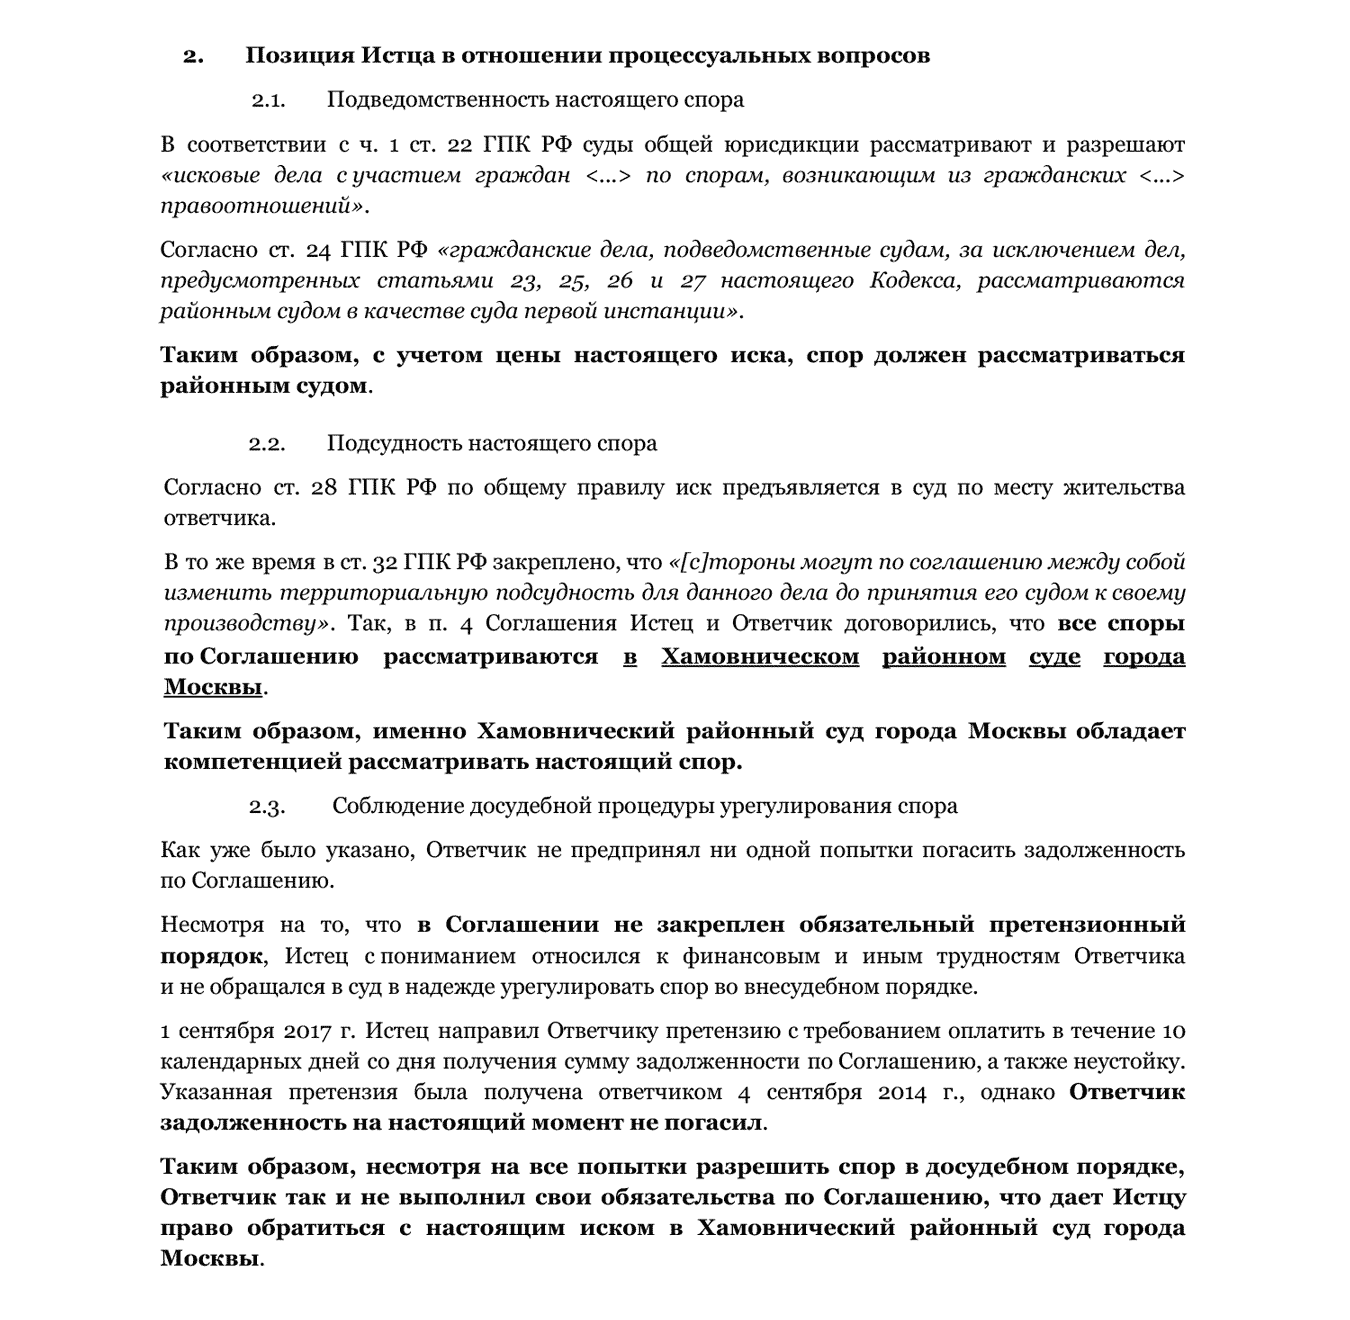 Соглашение, на основании которого будет разрешаться спор Александра Петровича и Васи